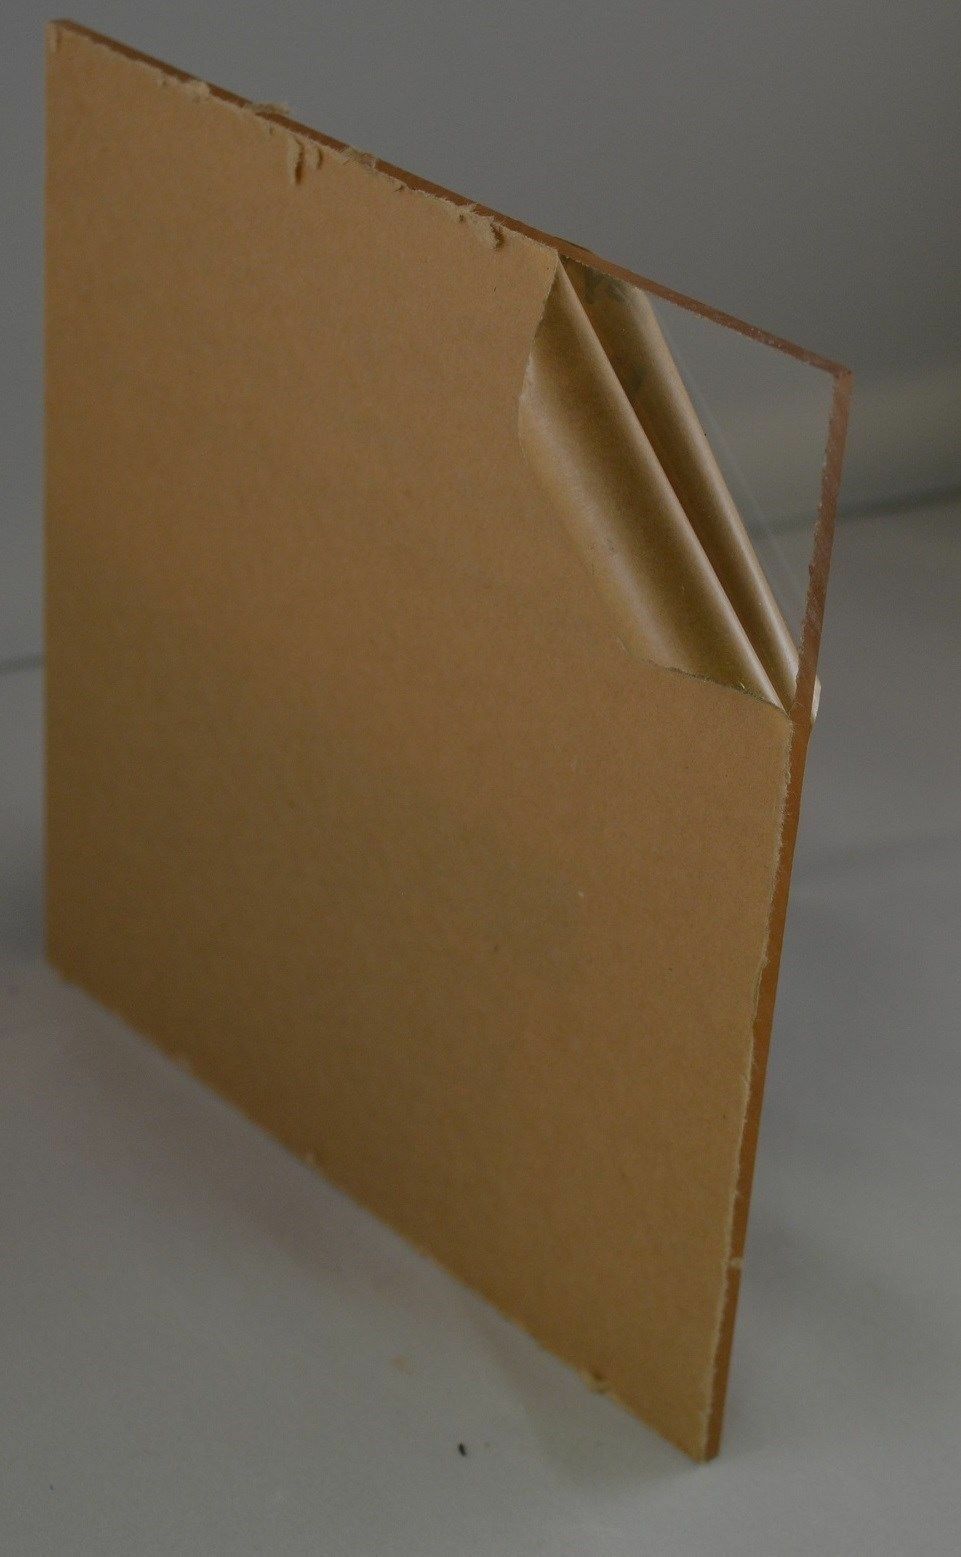 3 Pack 1/4" (6mm) Clear Acrylic Plexiglass 8"x12" Cast Plastic Sheet